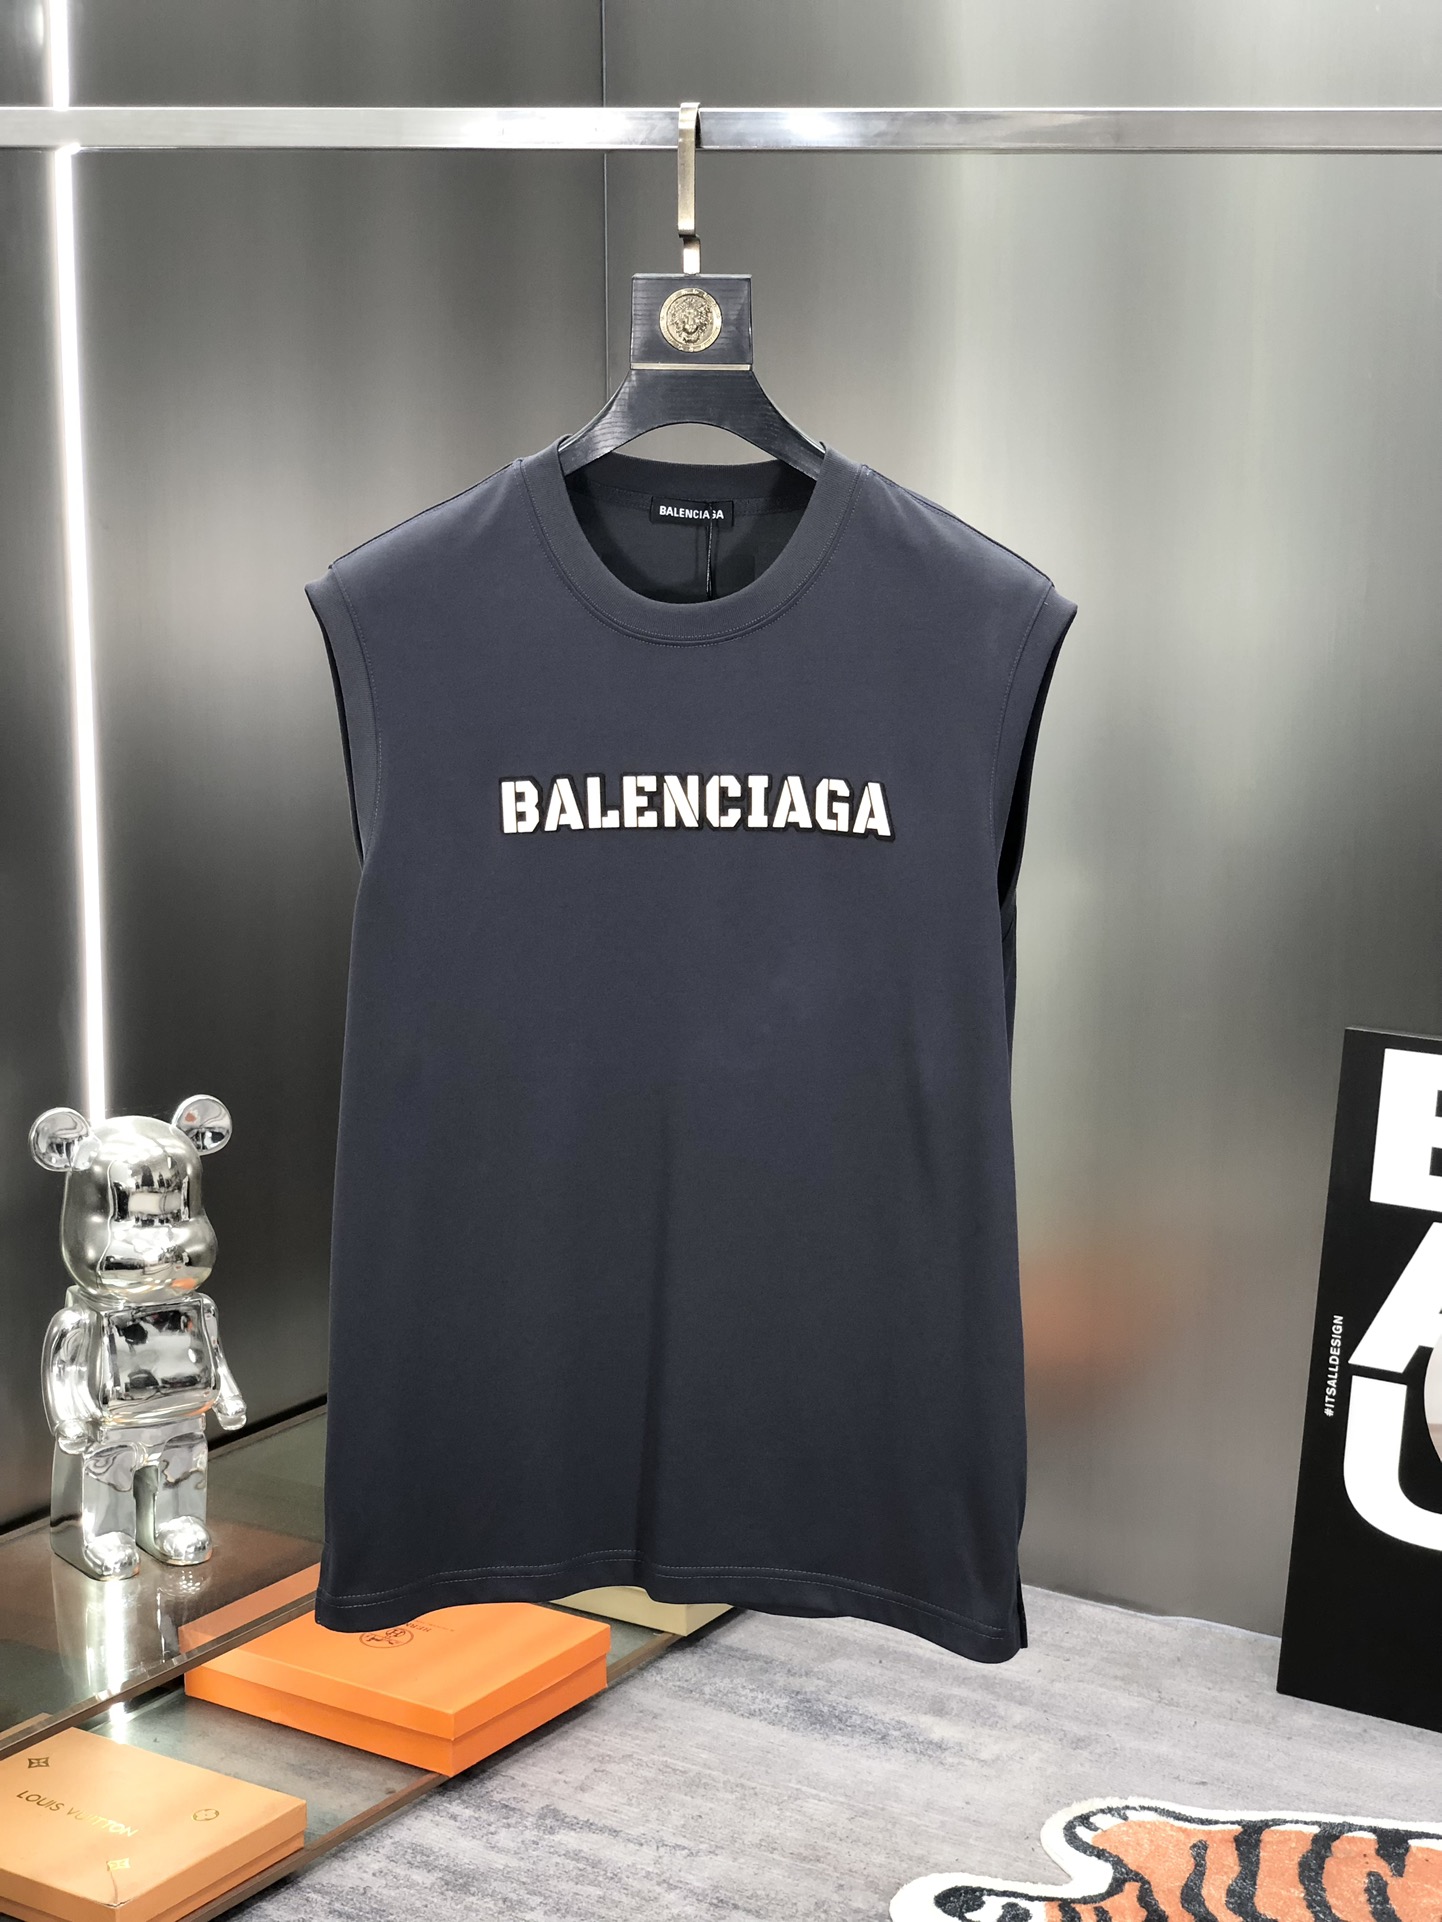 Balenciaga Clothing Tank Tops&Camis Waistcoats Unisex Cotton Summer Collection